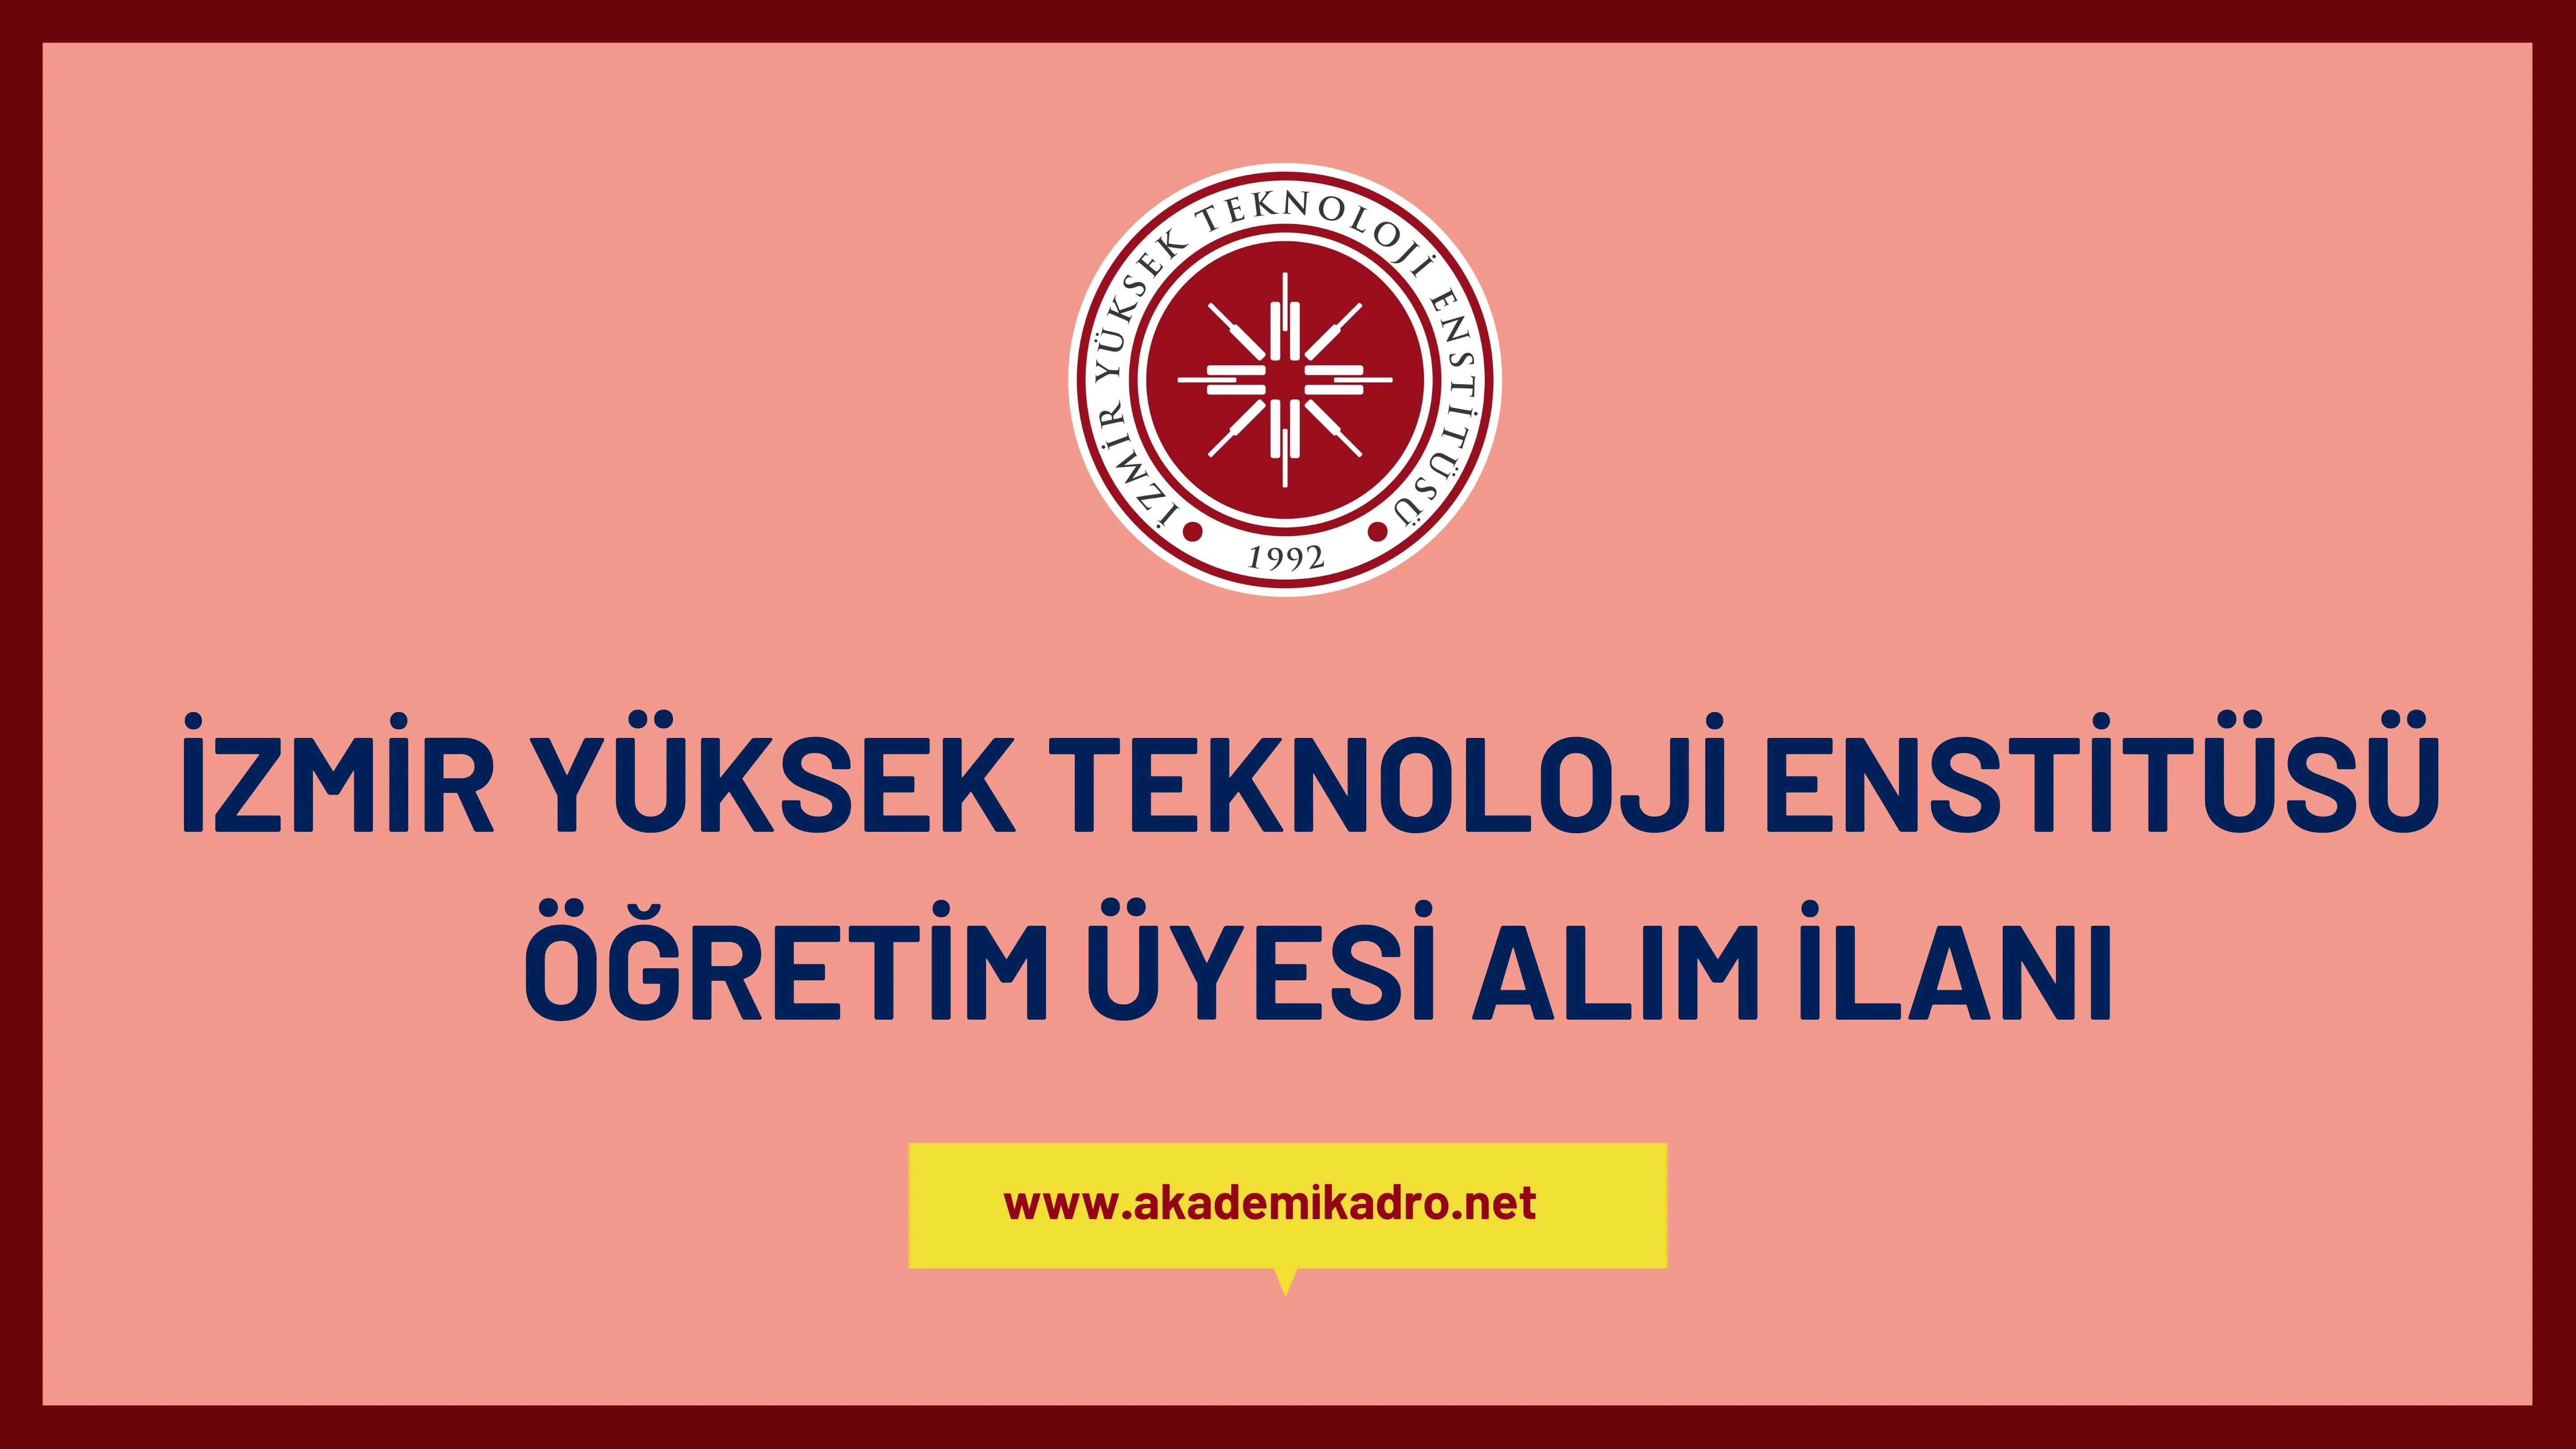 İzmir Yüksek Teknoloji Enstitüsü çeşitli branşlarda 10 akademik personel alacak.